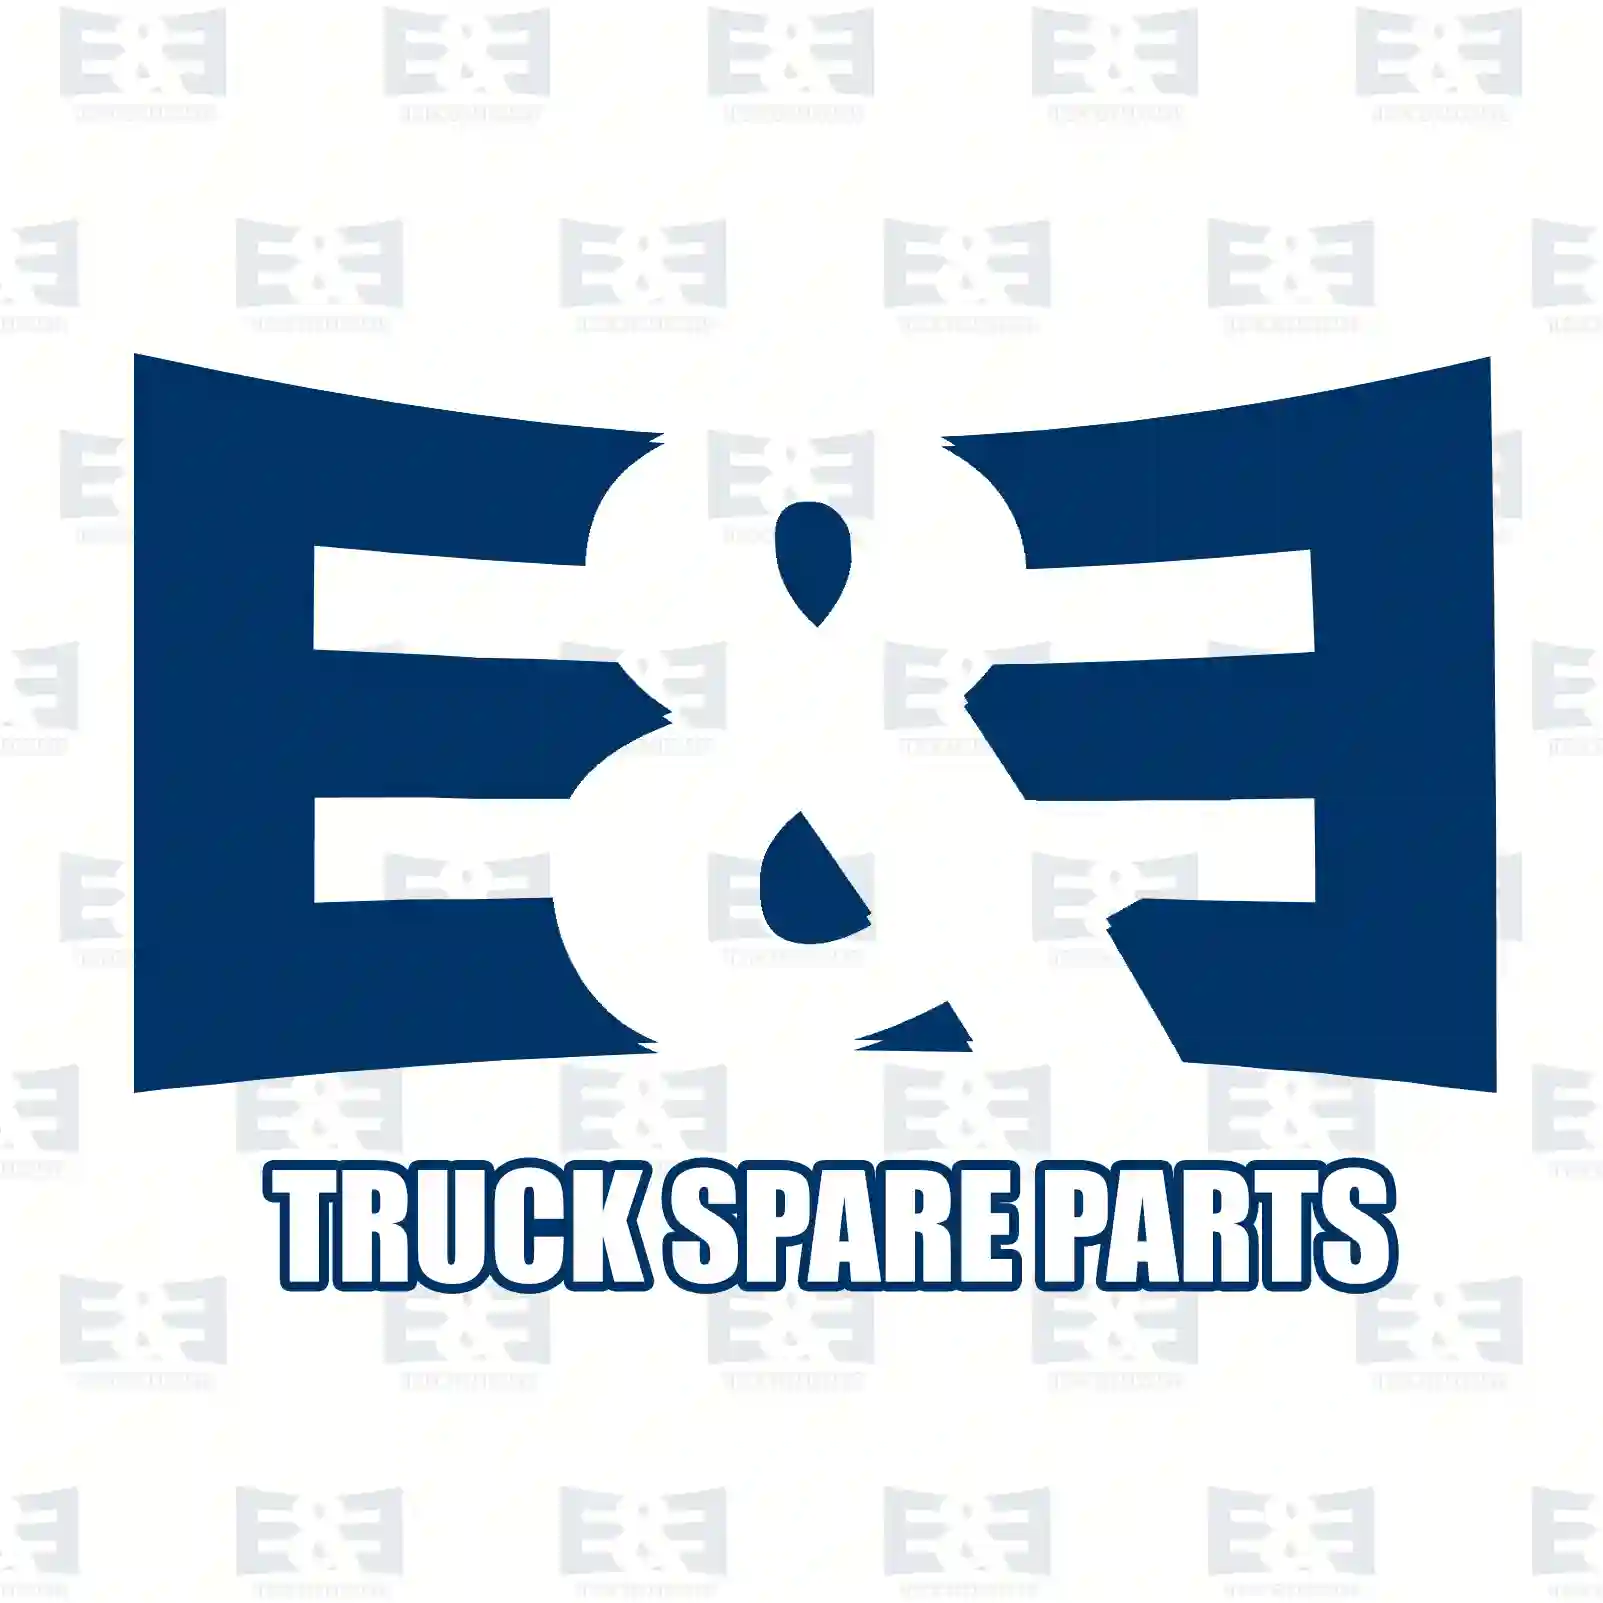 King pin kit, 2E2270459, 5010630991S, 7420865911, ZG41281-0008 ||  2E2270459 E&E Truck Spare Parts | Truck Spare Parts, Auotomotive Spare Parts King pin kit, 2E2270459, 5010630991S, 7420865911, ZG41281-0008 ||  2E2270459 E&E Truck Spare Parts | Truck Spare Parts, Auotomotive Spare Parts